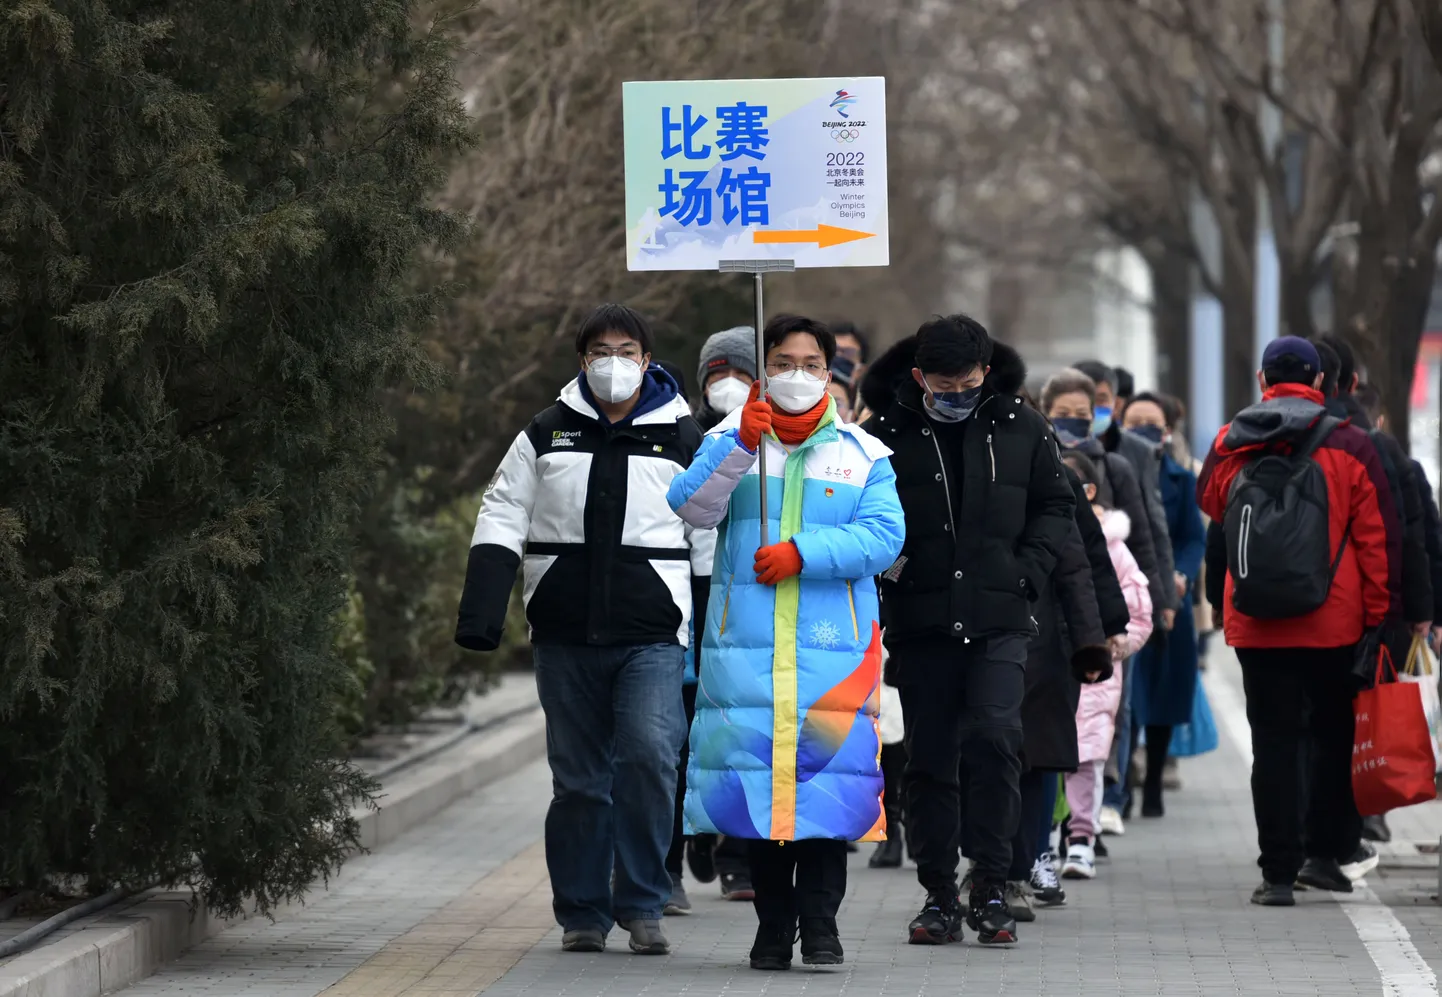 Vabatahtlik (plakatiga) 11. veebruaril Pekingis pealtvaatajaid positsioonidele paigutamas.